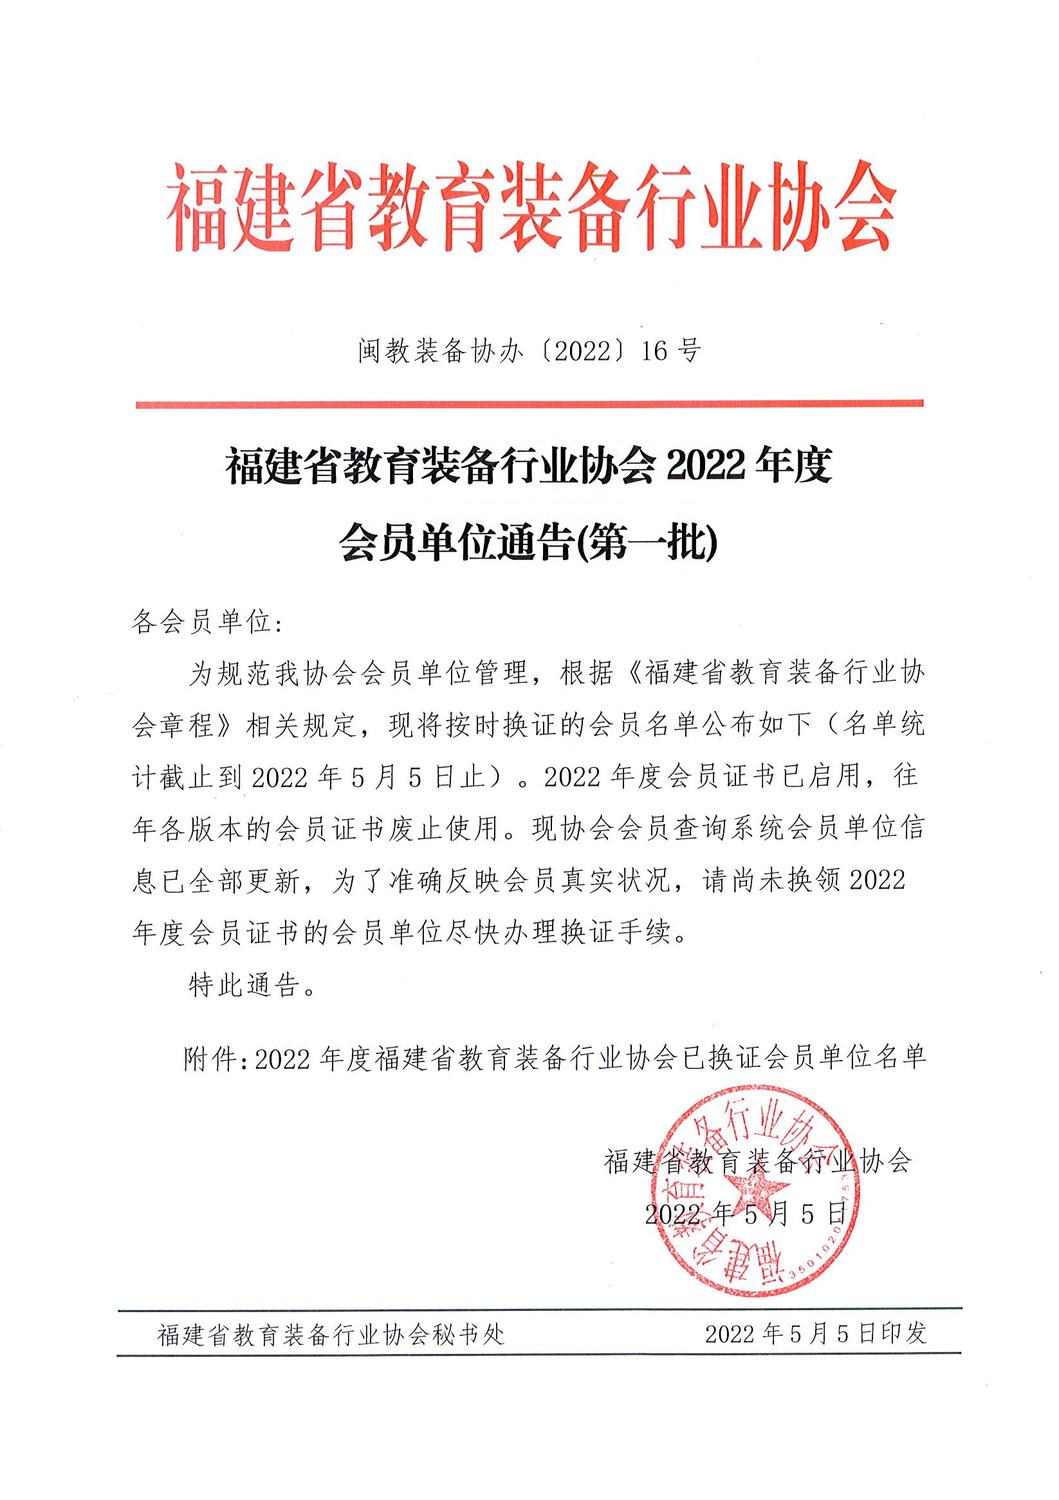 福建省教育装备行业协会2022年度会员通告（第一批）.jpg